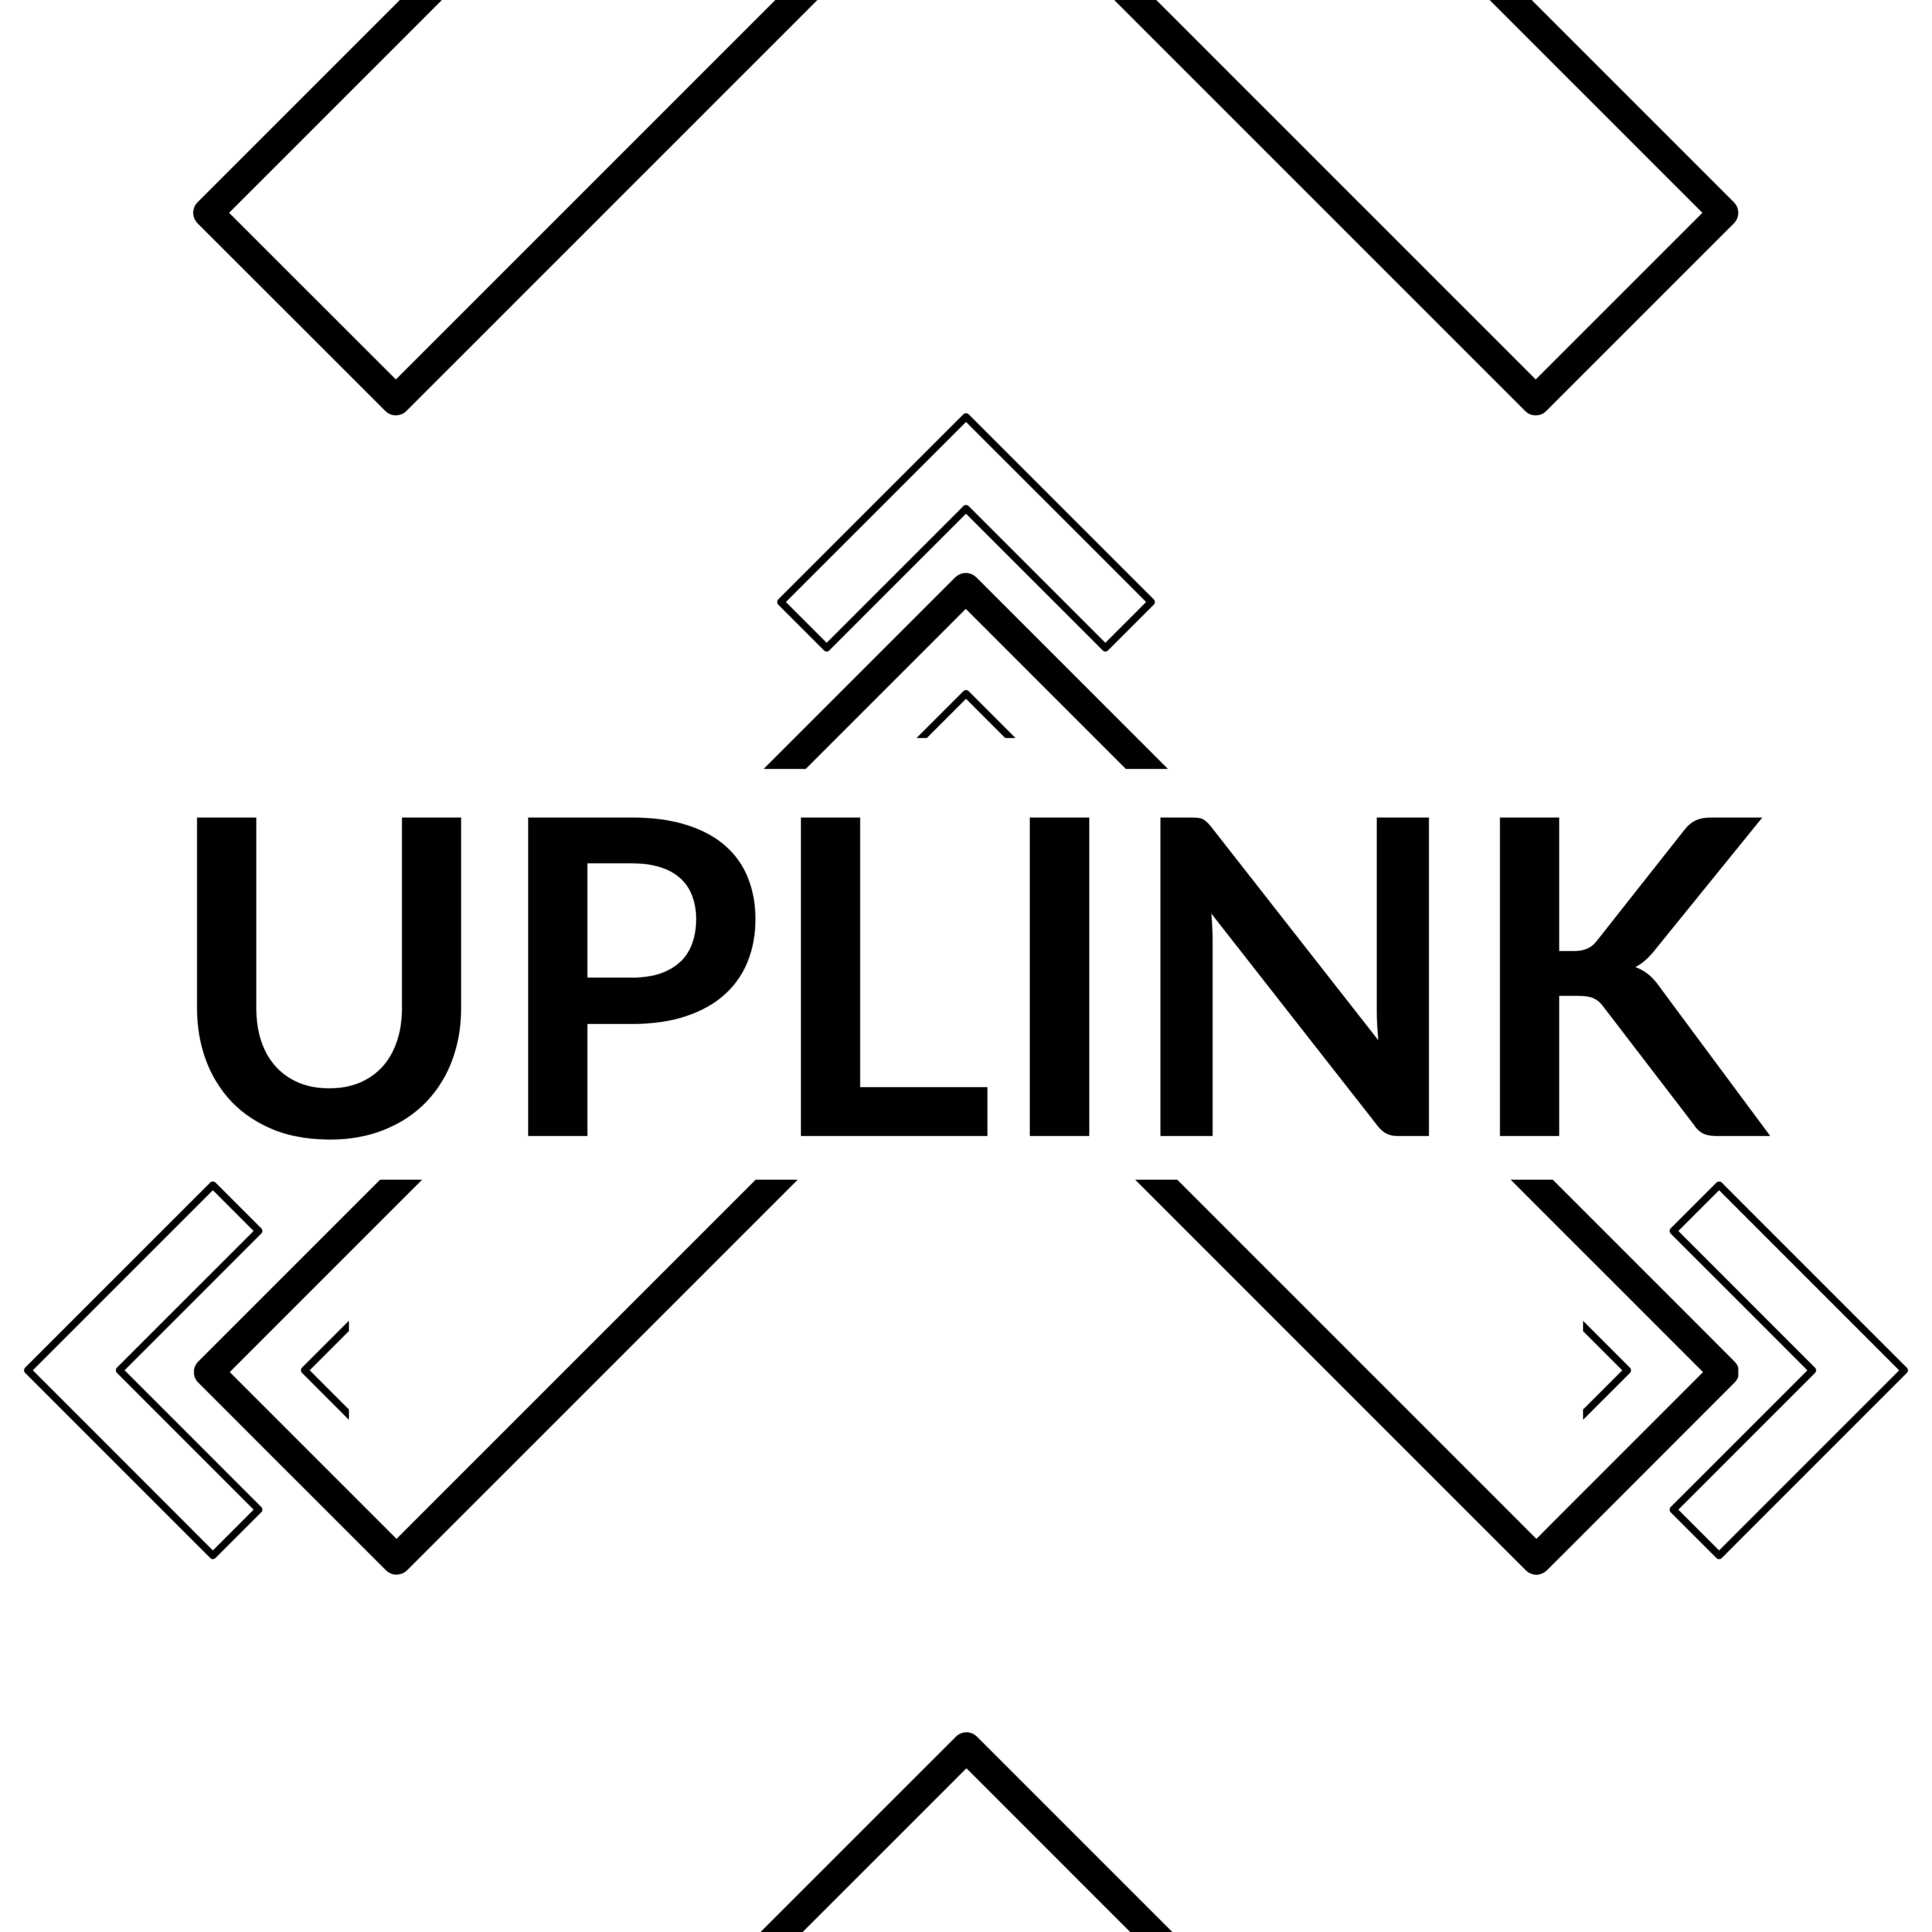 the uplink logo